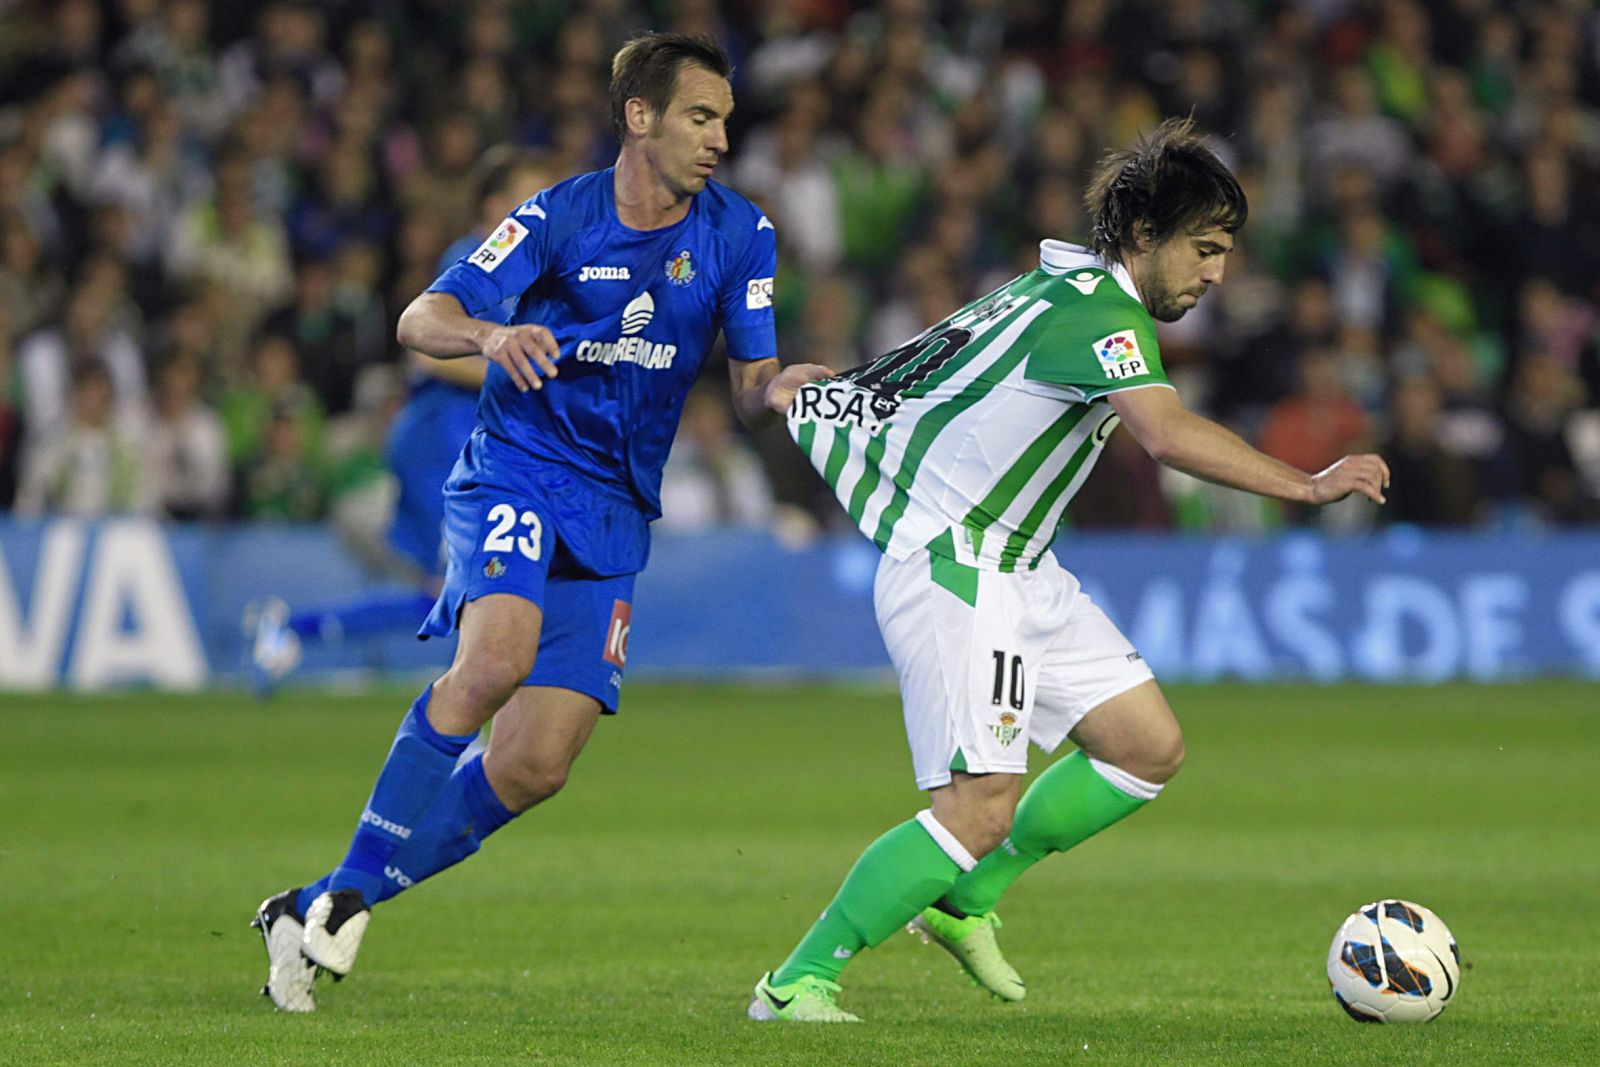 El centrocampista del Real Betis, Beñat Etxebarría, es agarrado de la camiseta por el jugador del Getafe CF, Borja Fernández.